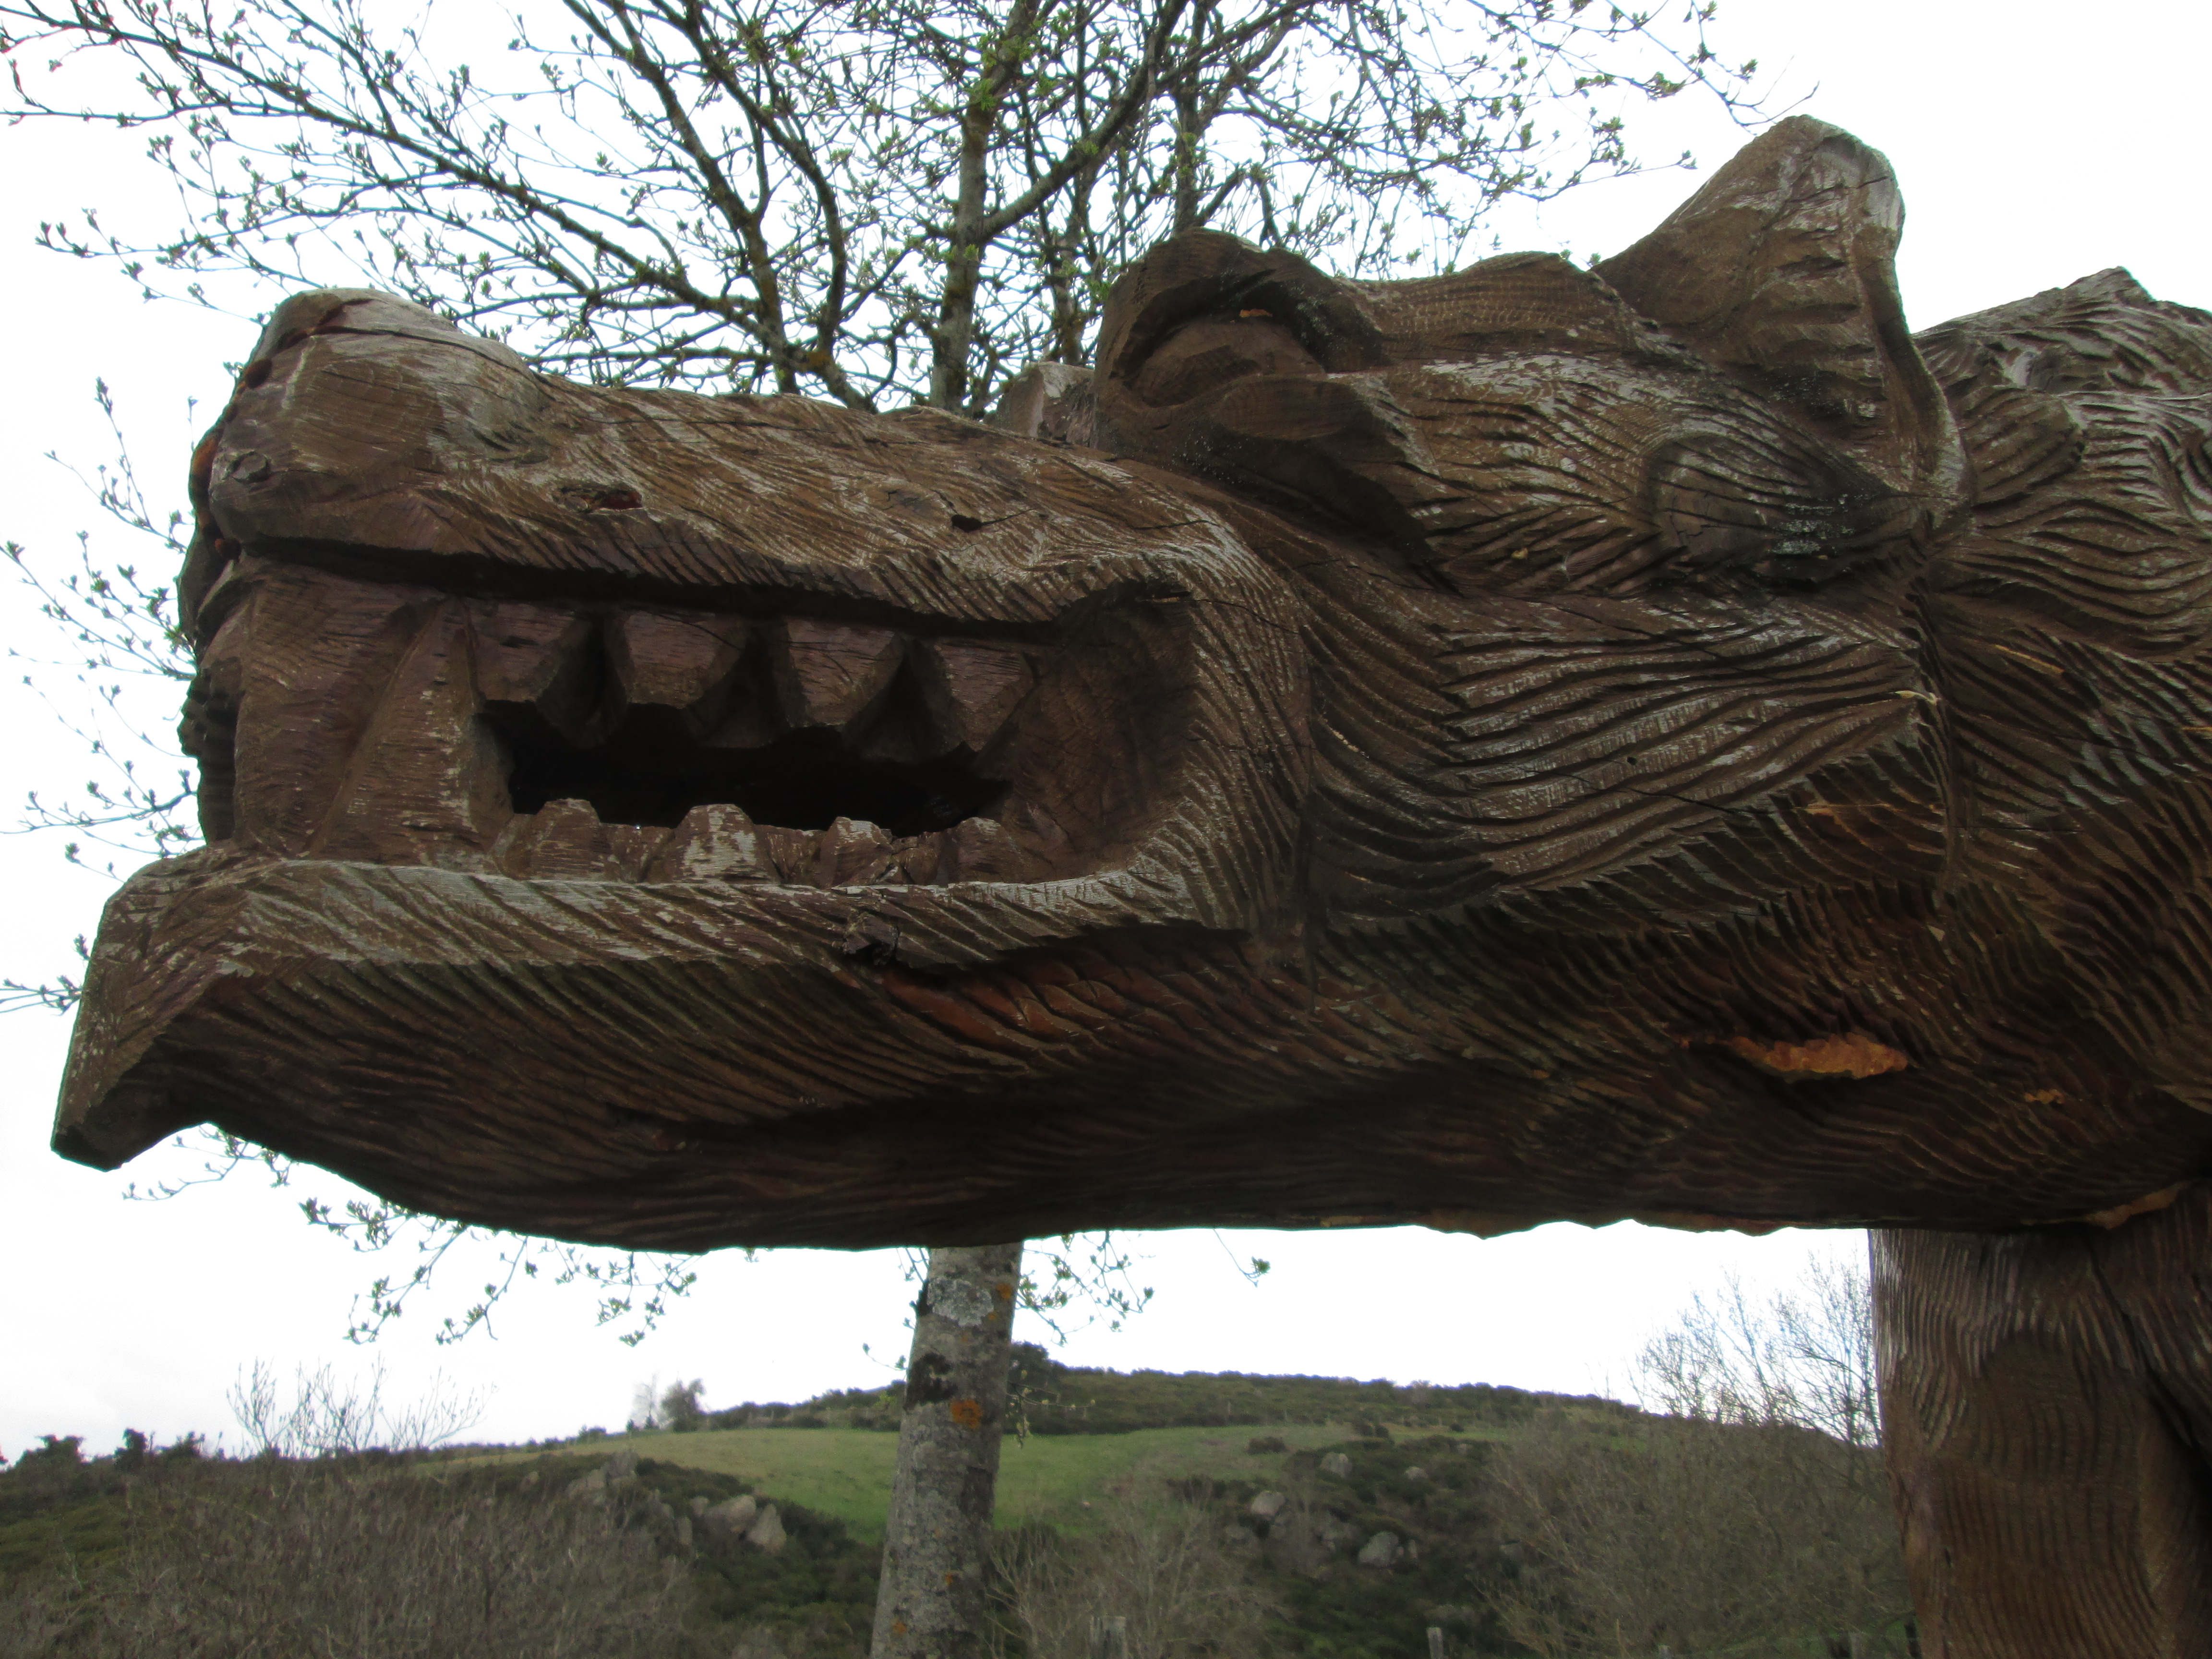 The Saugues Beast of Gévaudan sculpture. Photo by Visit Auvergne